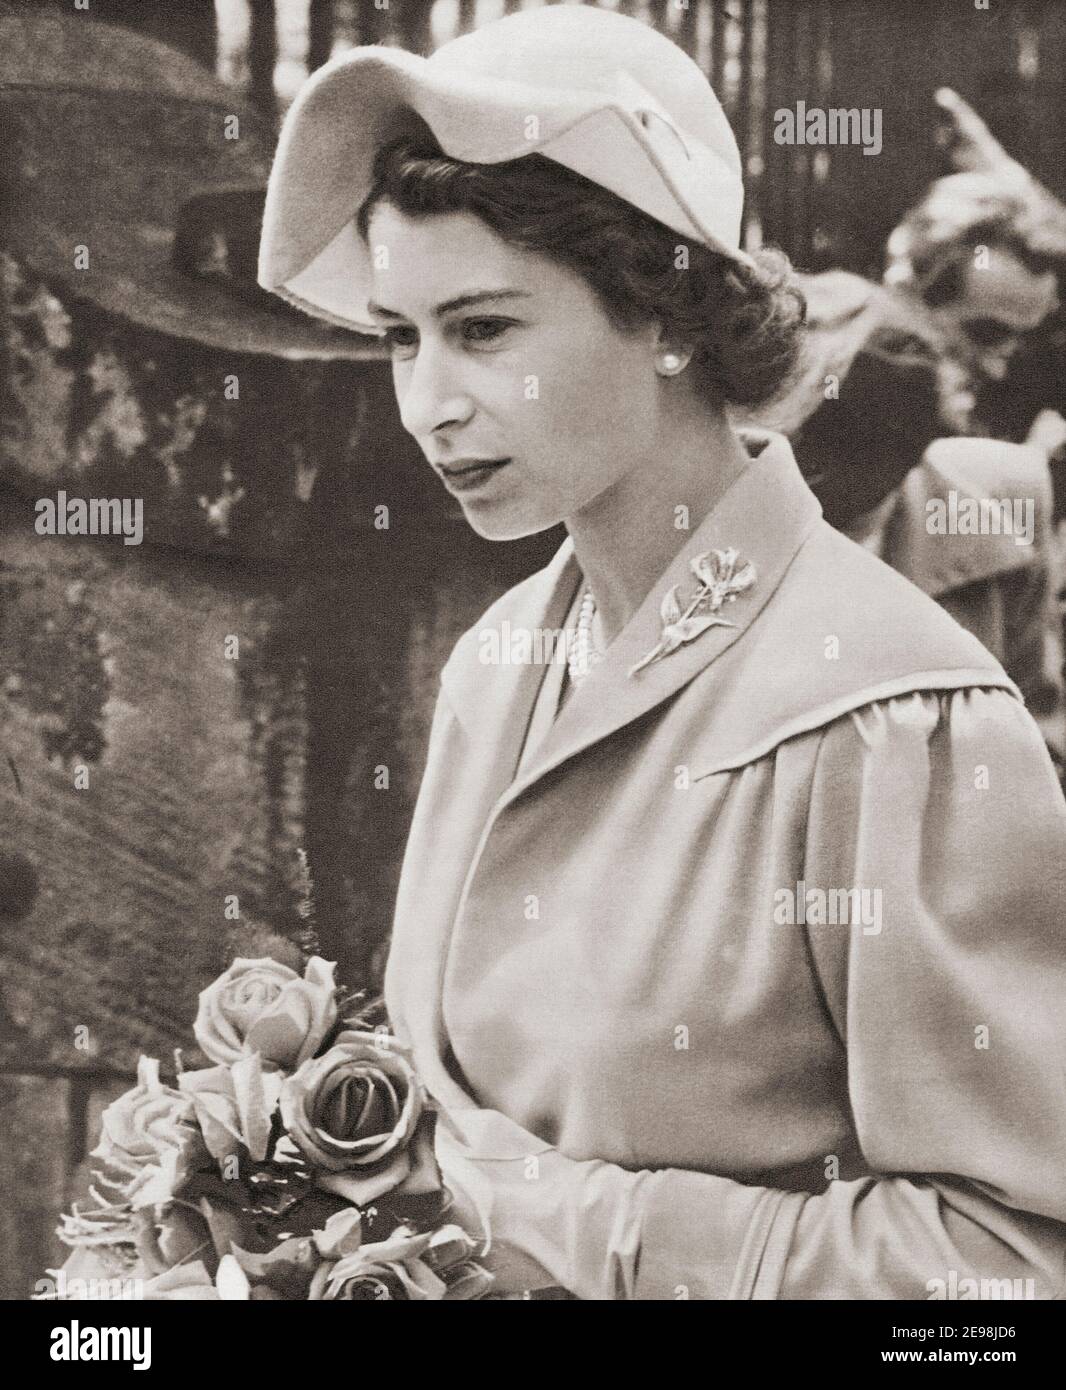 EDITORIALE SOLO la Regina Elisabetta II visto qui nel 1952. Elisabetta II, Regina del Regno Unito, 1926 - 2022. Dal Queen Elizabeth Coronation Book, pubblicato nel 1953. Foto Stock